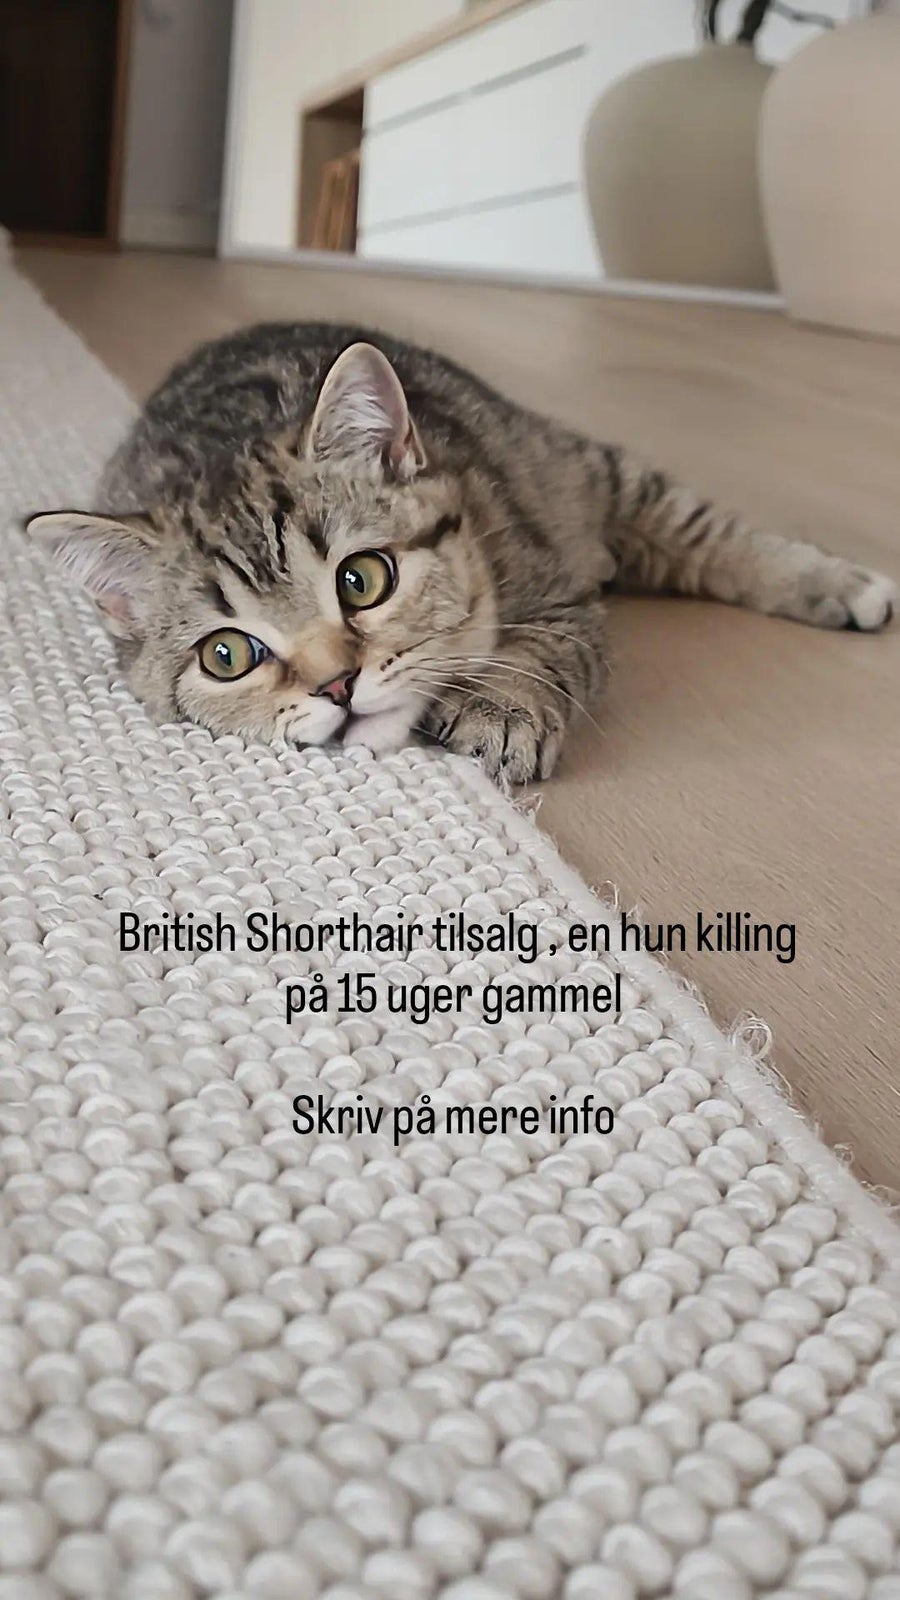 British Shorthair, hunkilling, 12 uger